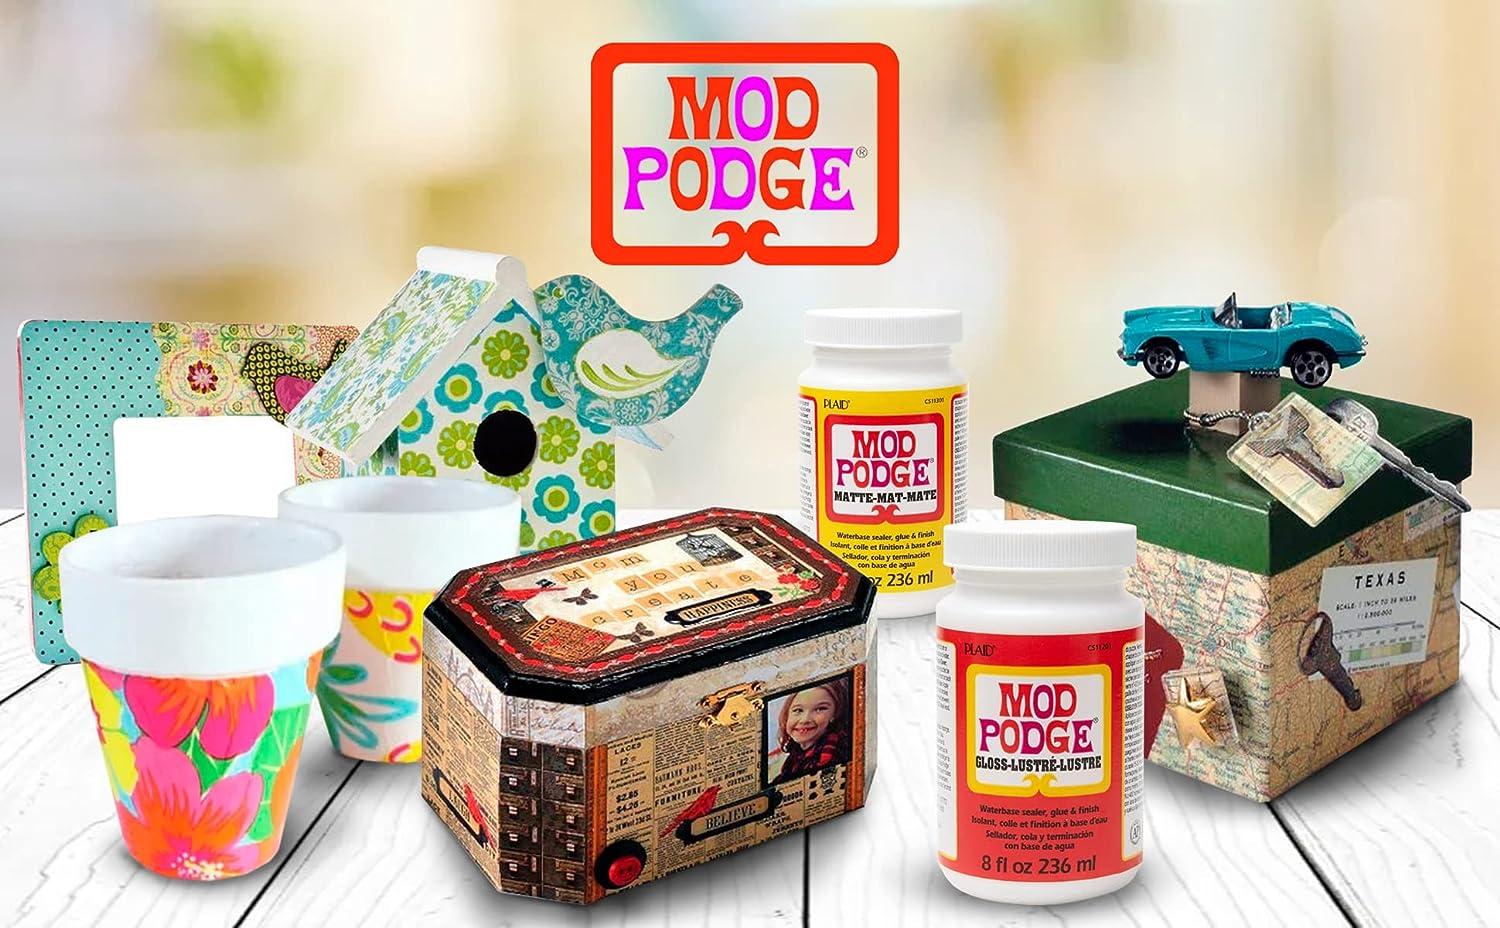 Plaid Mod Podge Puzzle Saver - 8-ounce - Clear